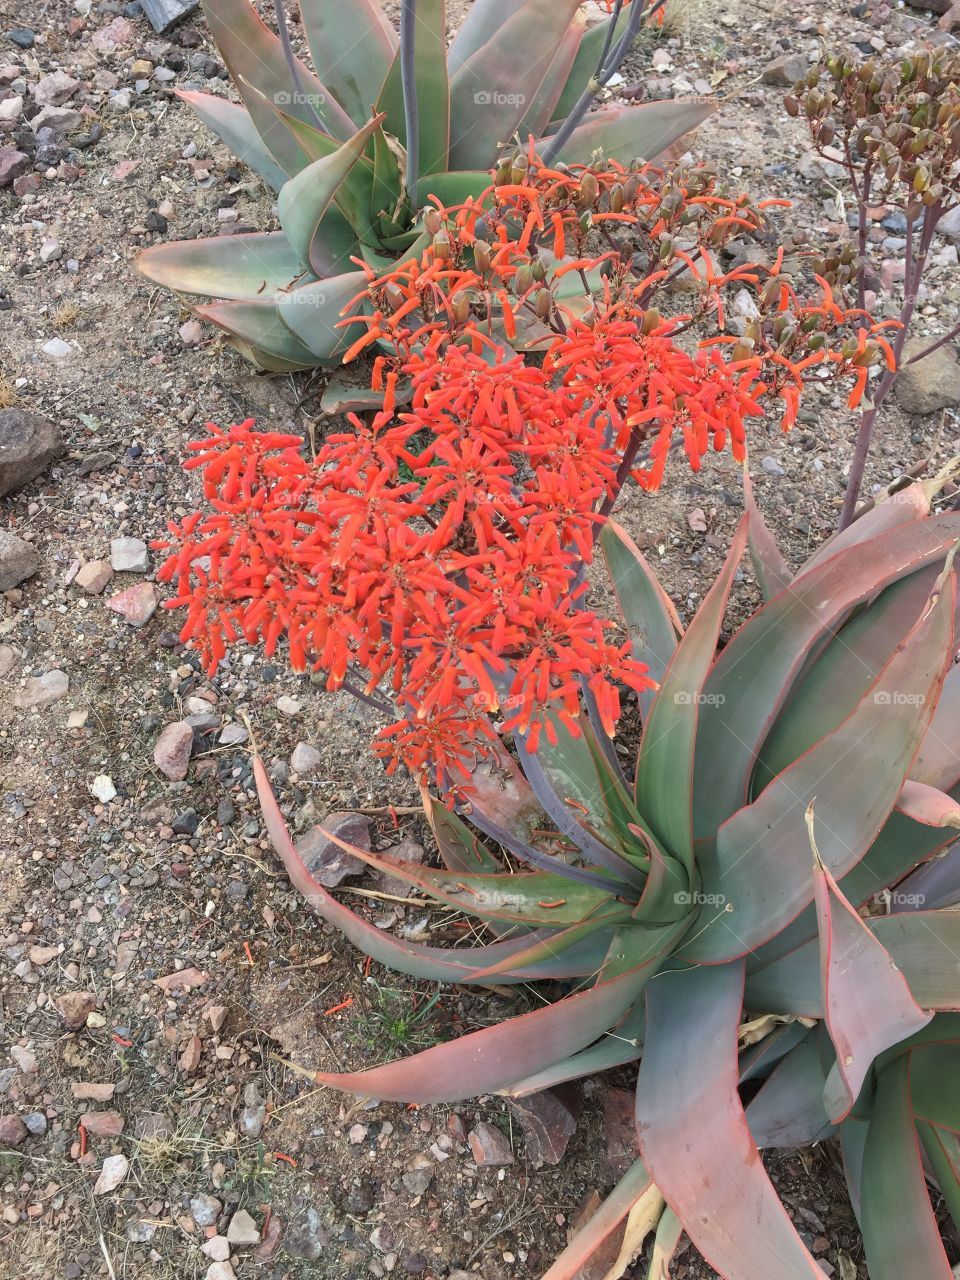 Desert flowers 